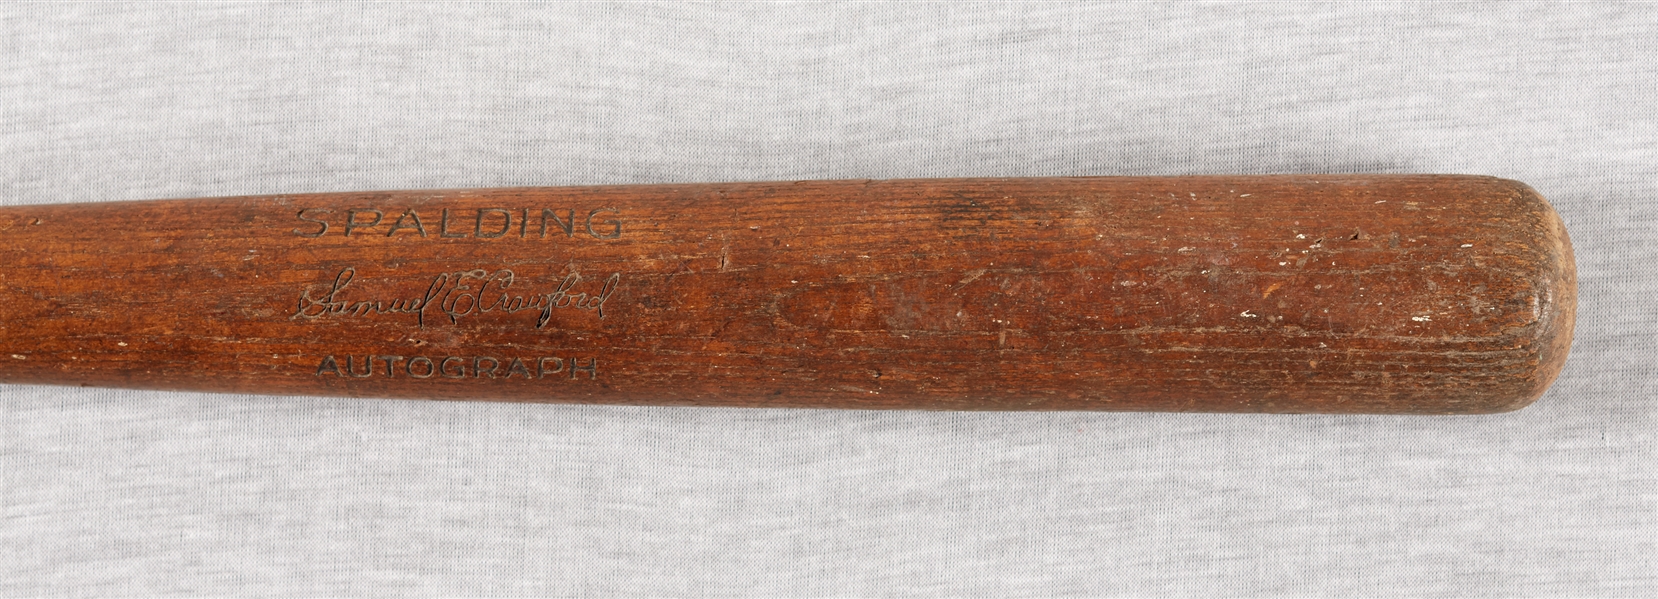 Sam Crawford 1912-1925 Game-Used Spalding Bat (PSA/DNA GU 6)